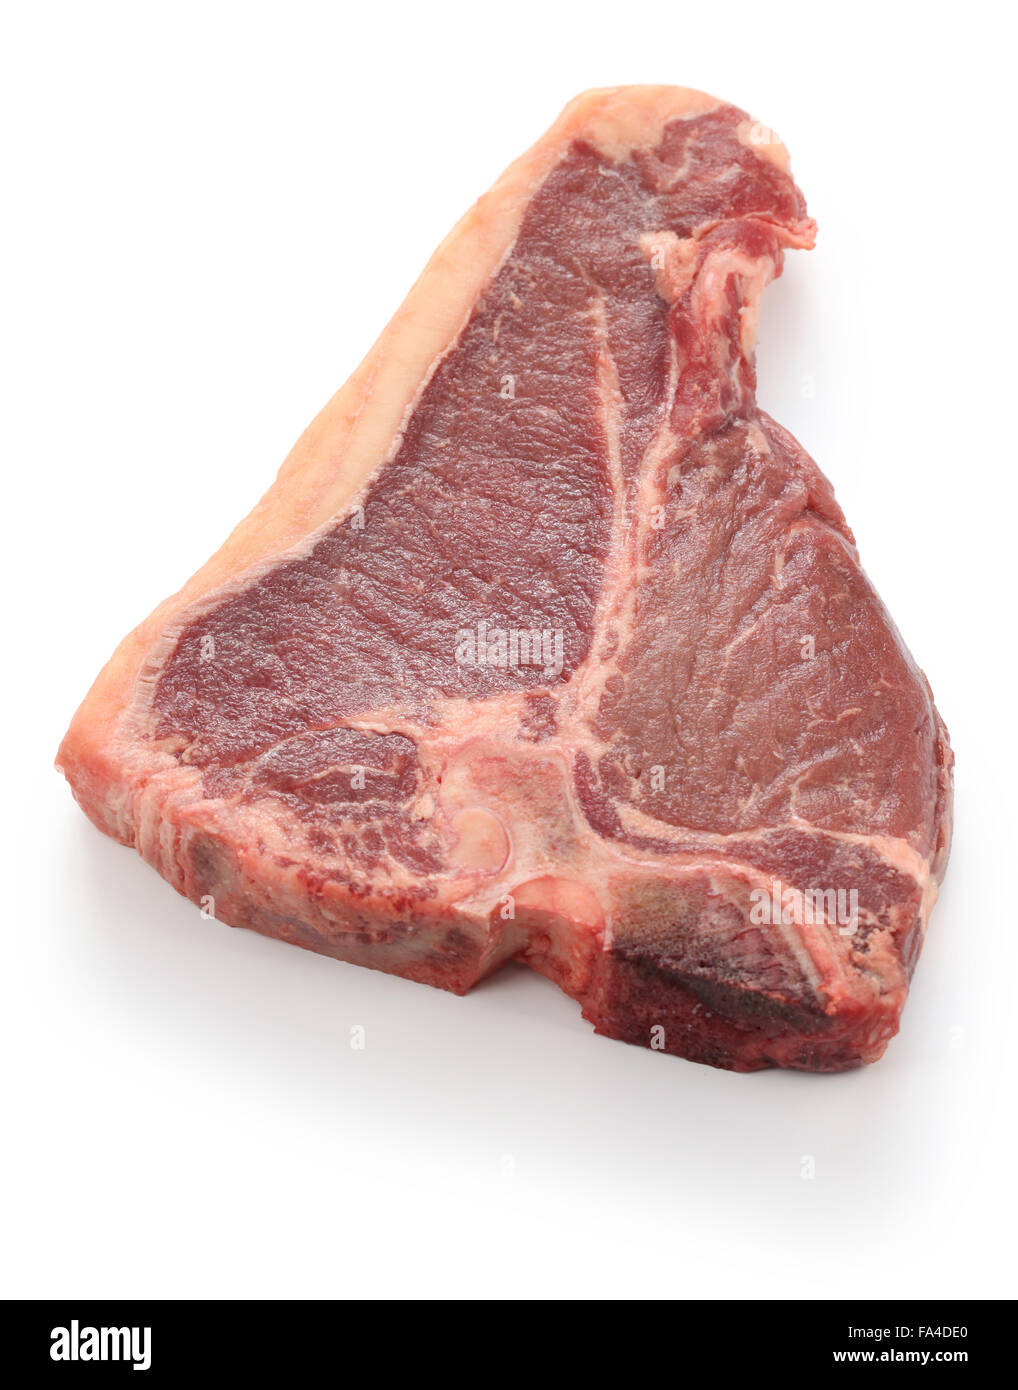 Sécher de t-bone steak de boeuf cru, isolé sur fond blanc Banque D'Images